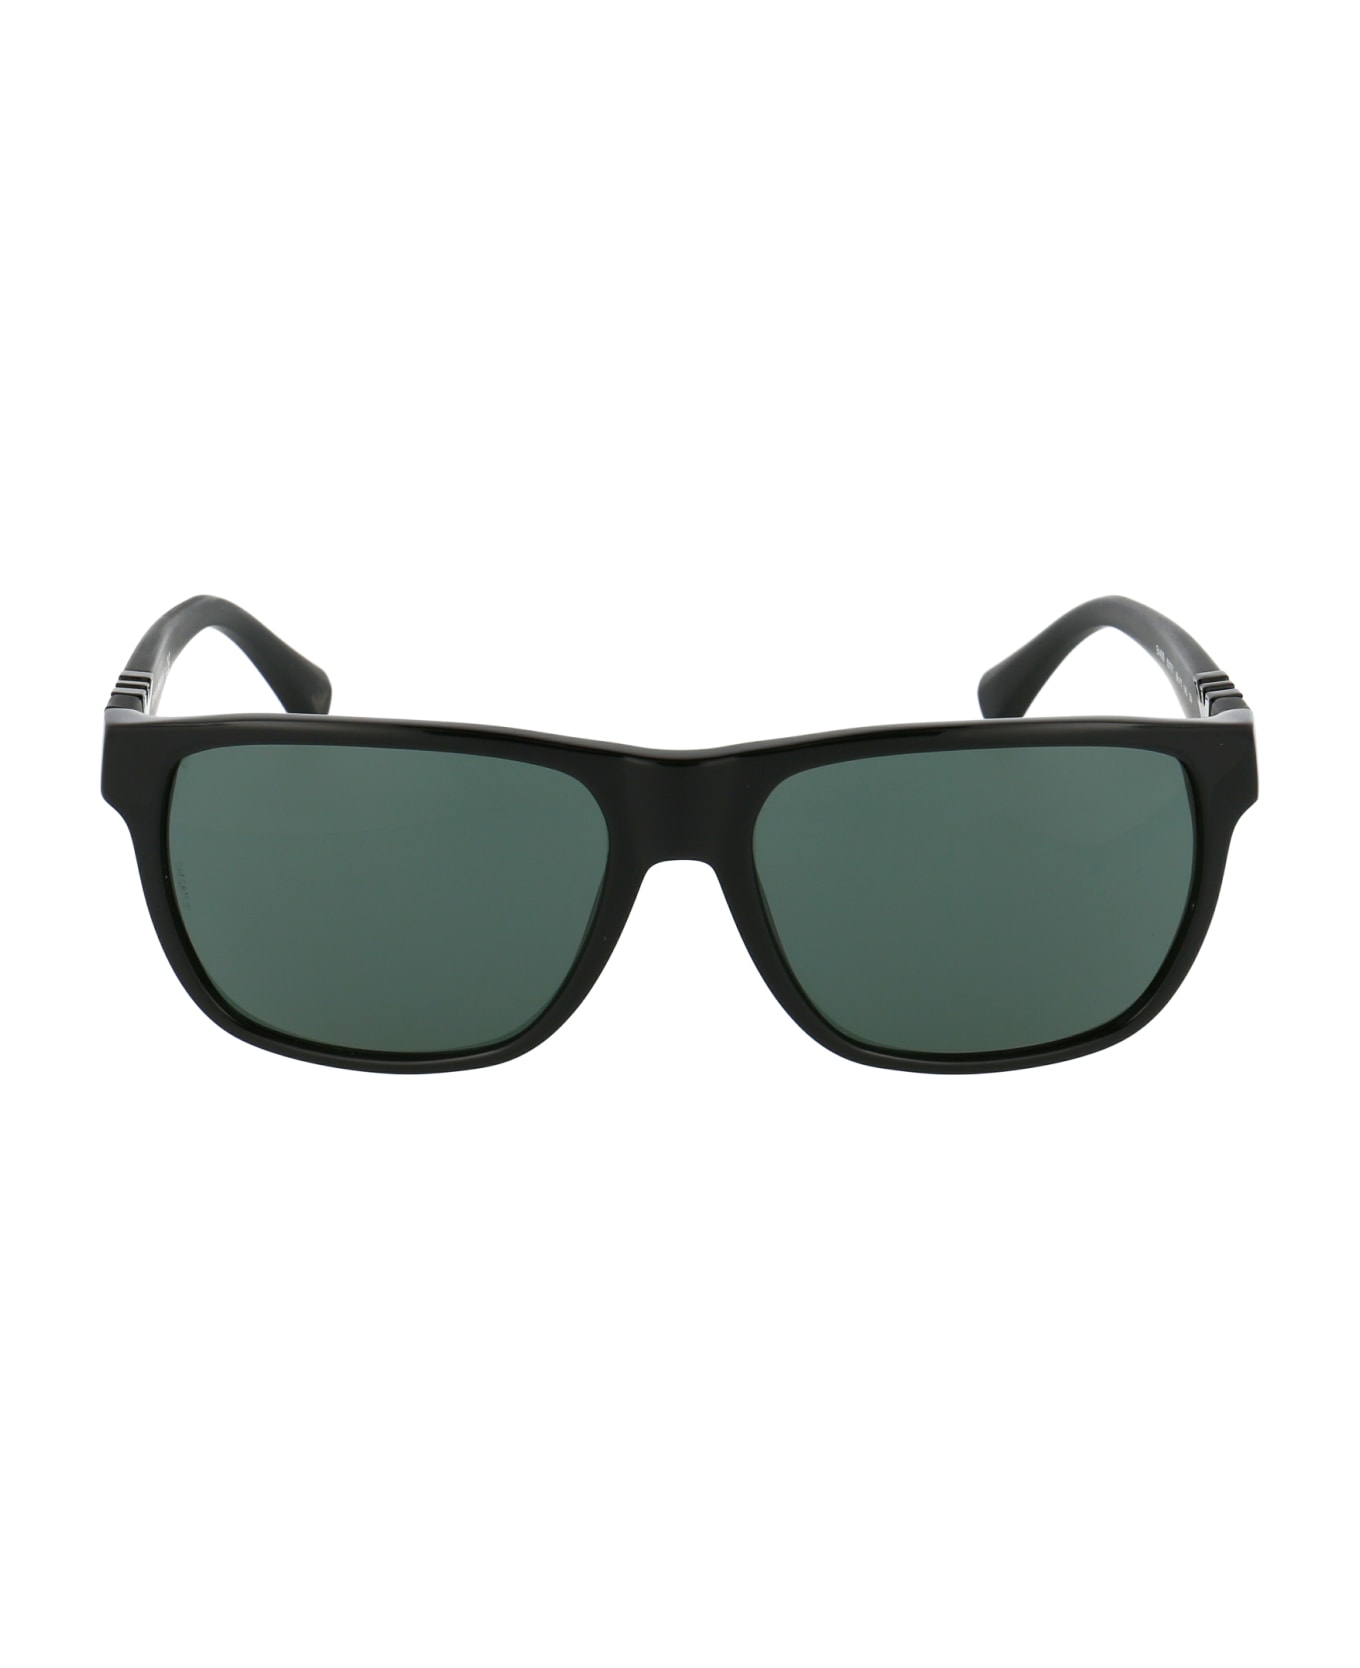 Emporio Armani 0ea4035 Sunglasses - 501771 SHINY BLACK